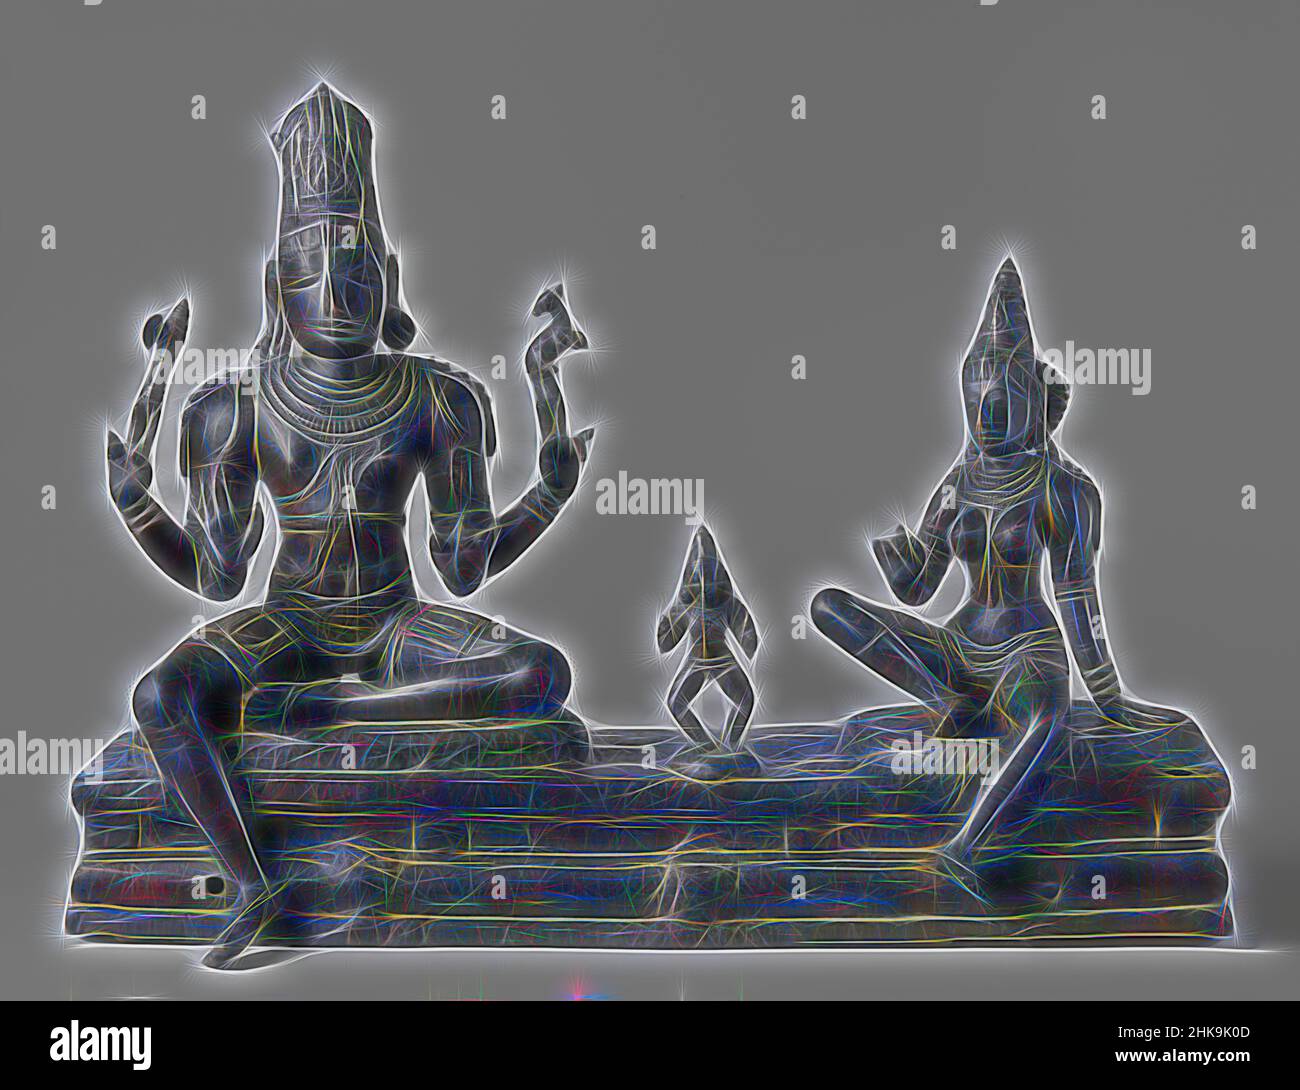 Inspirée par Somaskanda, la composition se compose de trois figures placées sur un piédestal. La Siva à quatre armes est assise dans la posture dite de lalita-asana (avec une jambe suspendue). Son avant-bras droit montre le geste de réconfort (abhaya-mudra); l'avant-bras gauche est dans le kataka-mudra. Le, repensé par Artotop. L'art classique réinventé avec une touche moderne. Conception de lumière chaleureuse et gaie, de luminosité et de rayonnement de lumière. La photographie s'inspire du surréalisme et du futurisme, embrassant l'énergie dynamique de la technologie moderne, du mouvement, de la vitesse et révolutionne la culture Banque D'Images